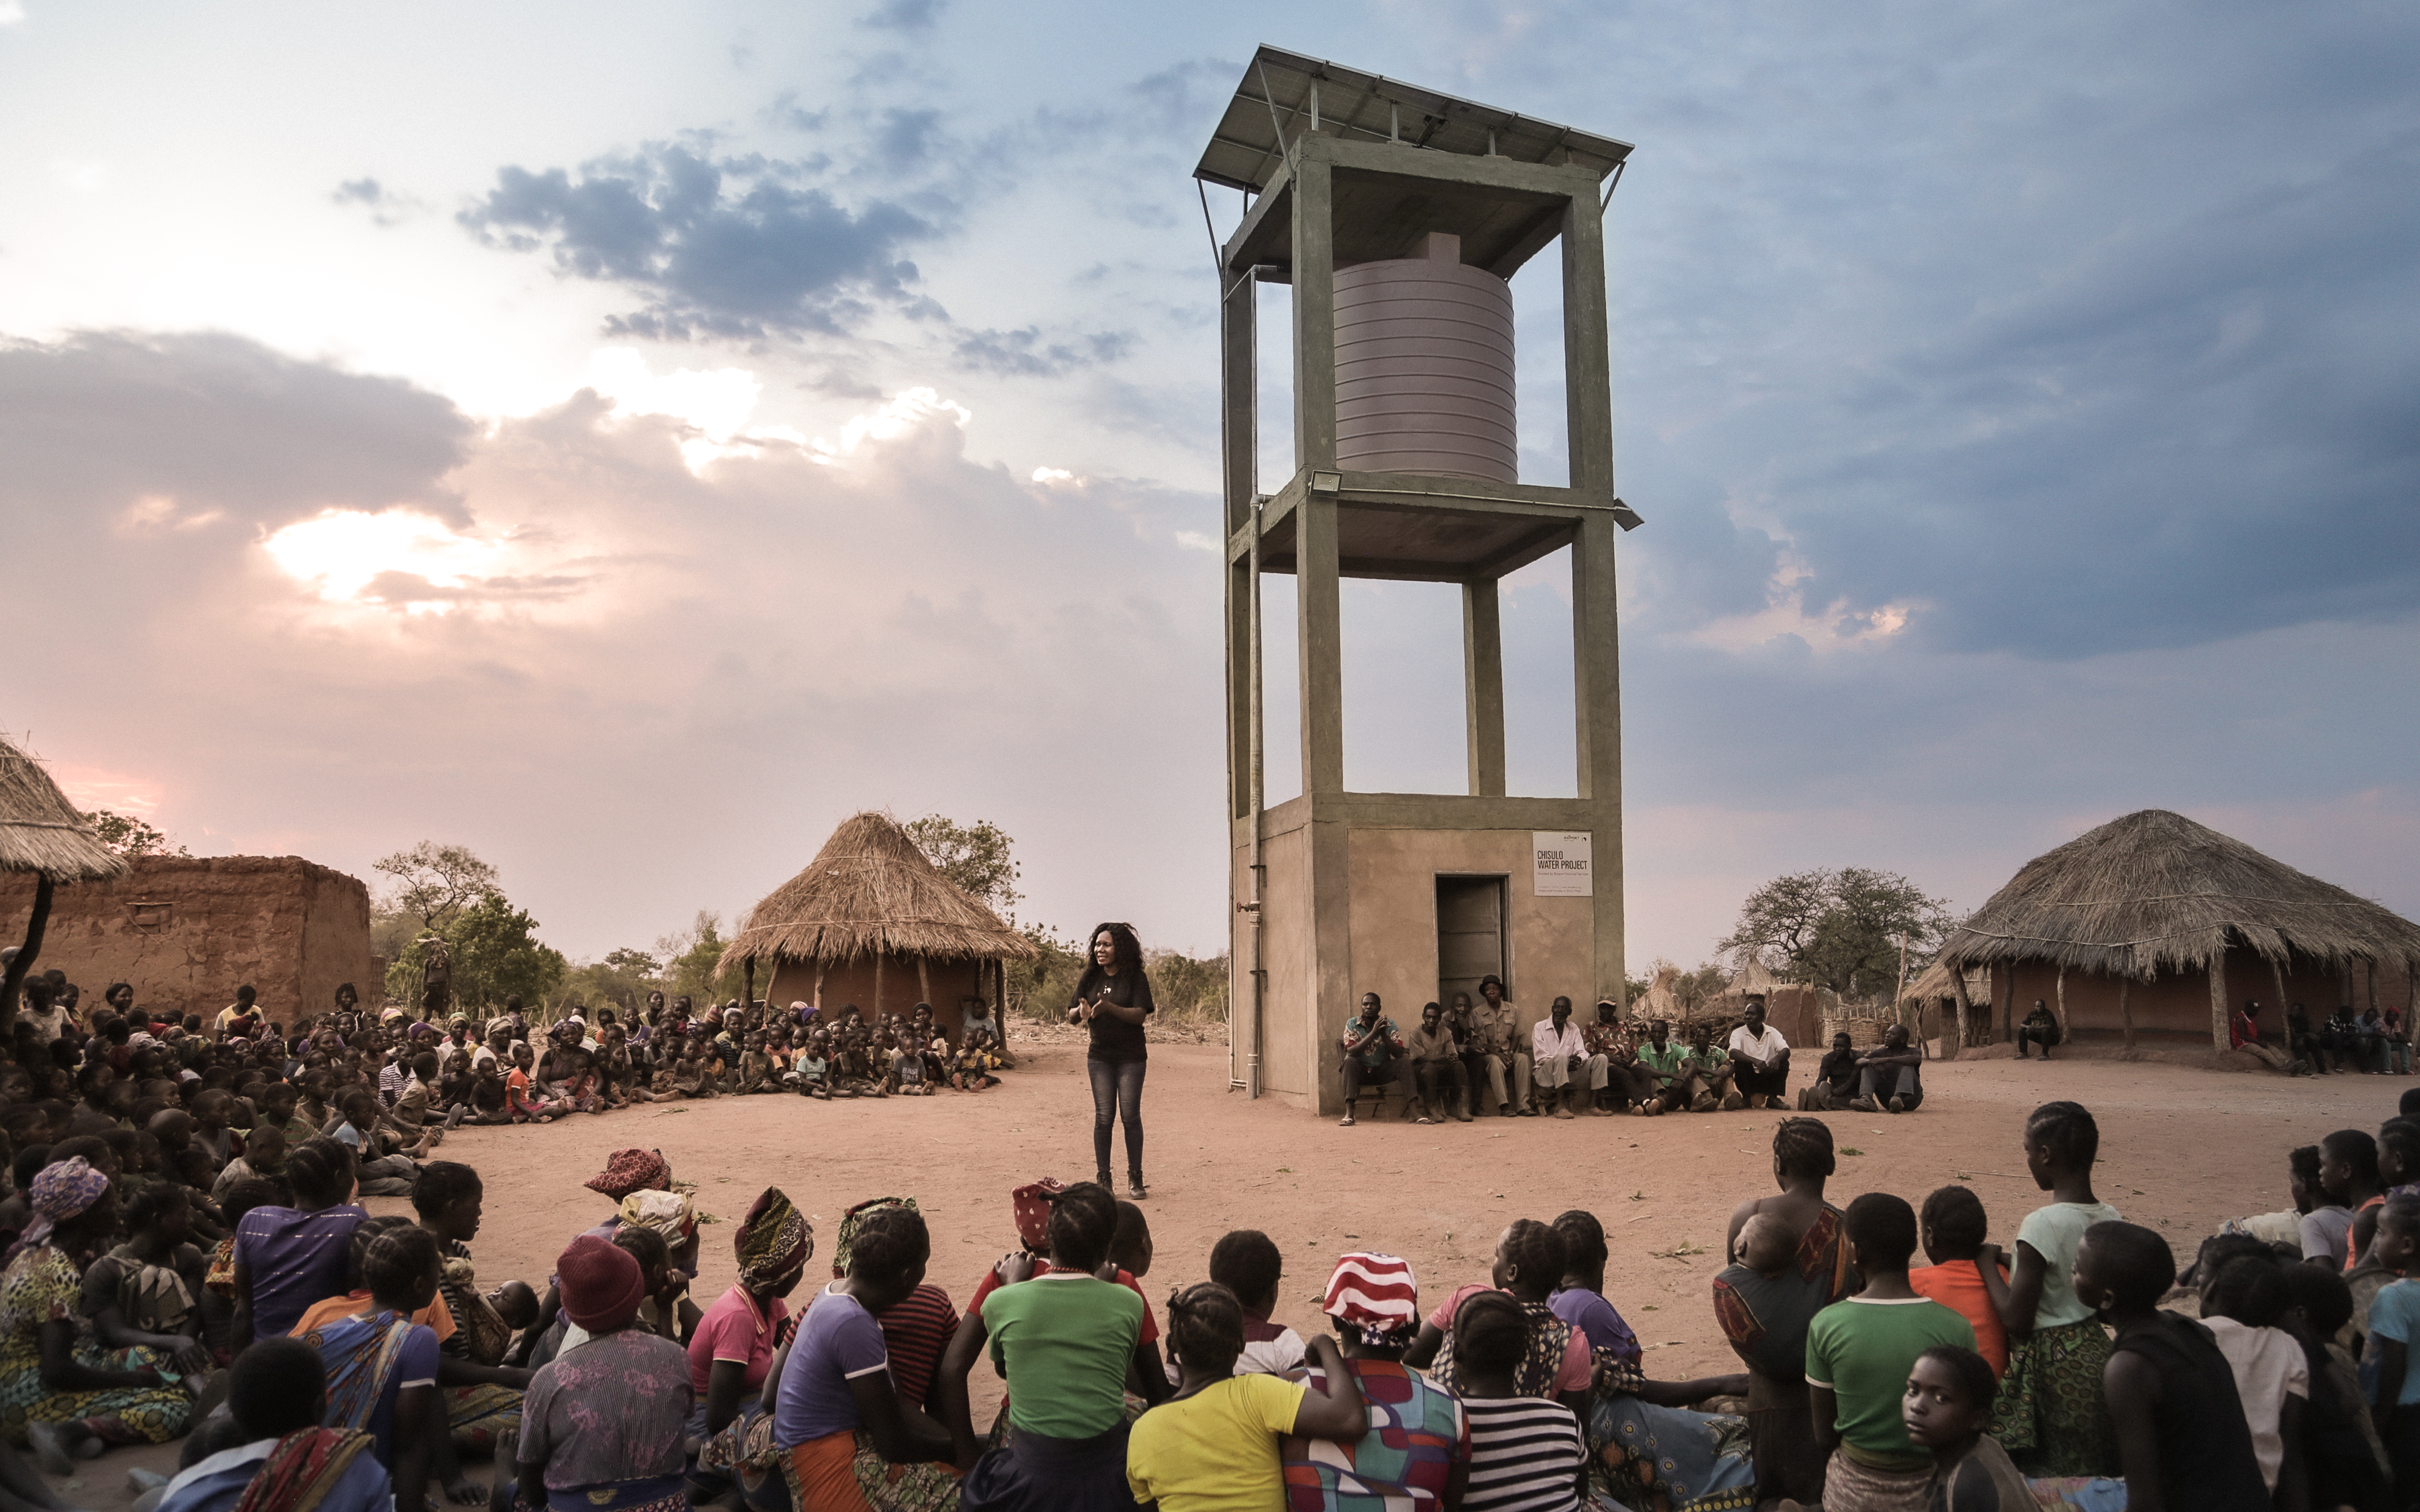 Die Frauen des Dorfes Chisulo in Sambia mussten früher um 3:00 Uhr morgens aufstehen und über 8 Kilometer laufen, um die Wasserquelle zu erreichen. Heute haben sie ein Solar-Wasserpumpensystem, um ihre Gemeinde mit Wasser zu versorgen. (zum Vergrößern bitte anklicken)